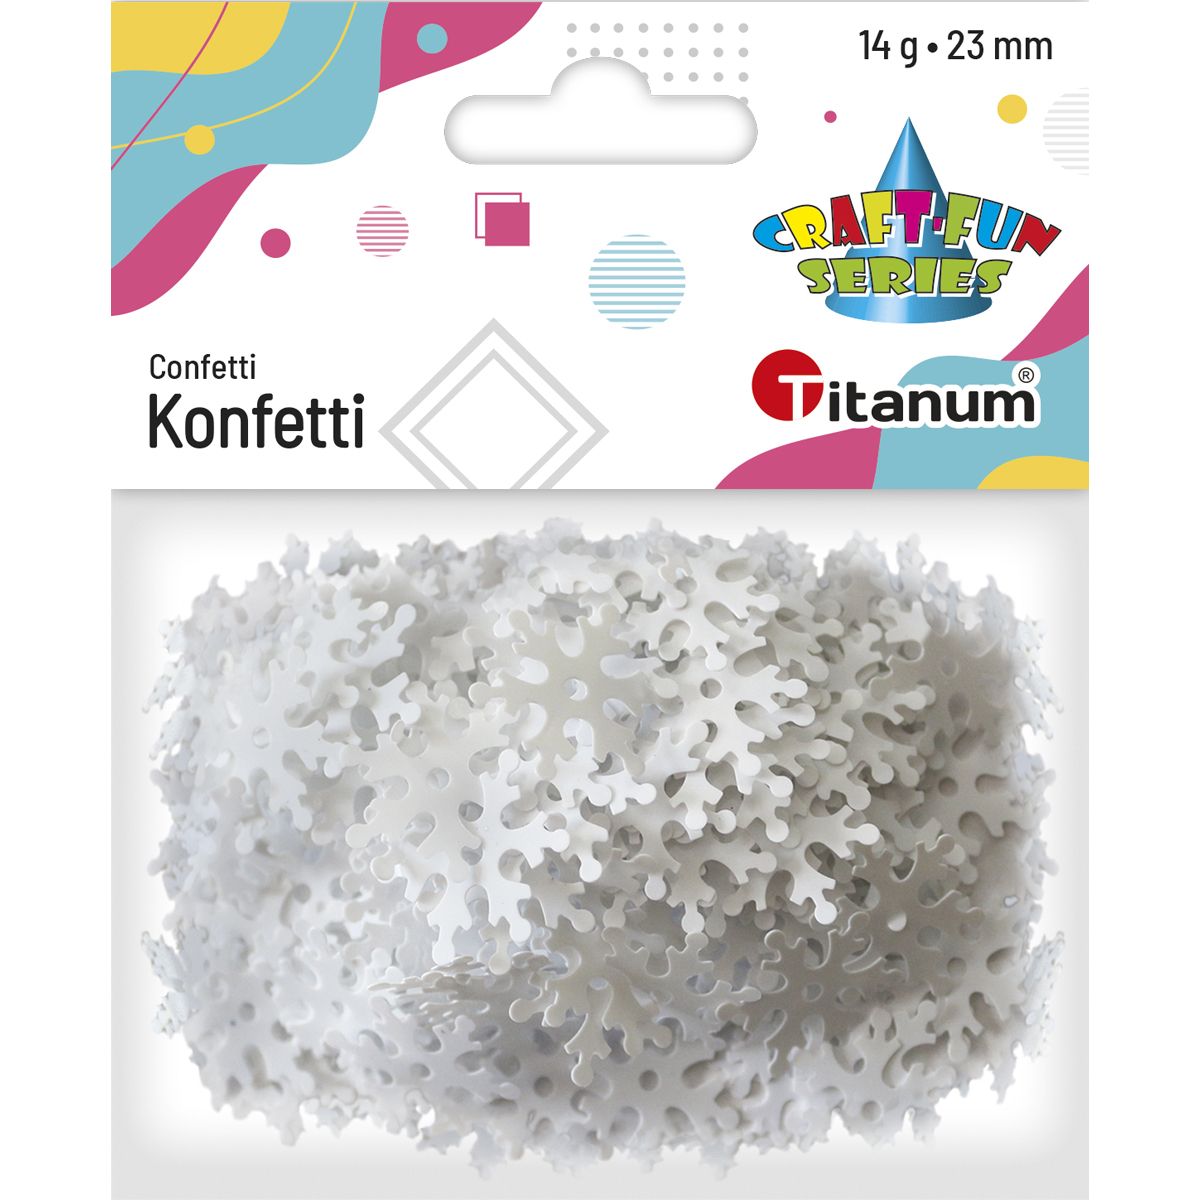 Konfetti Craft-Fun Series płatki śniegu Titanum (284814)